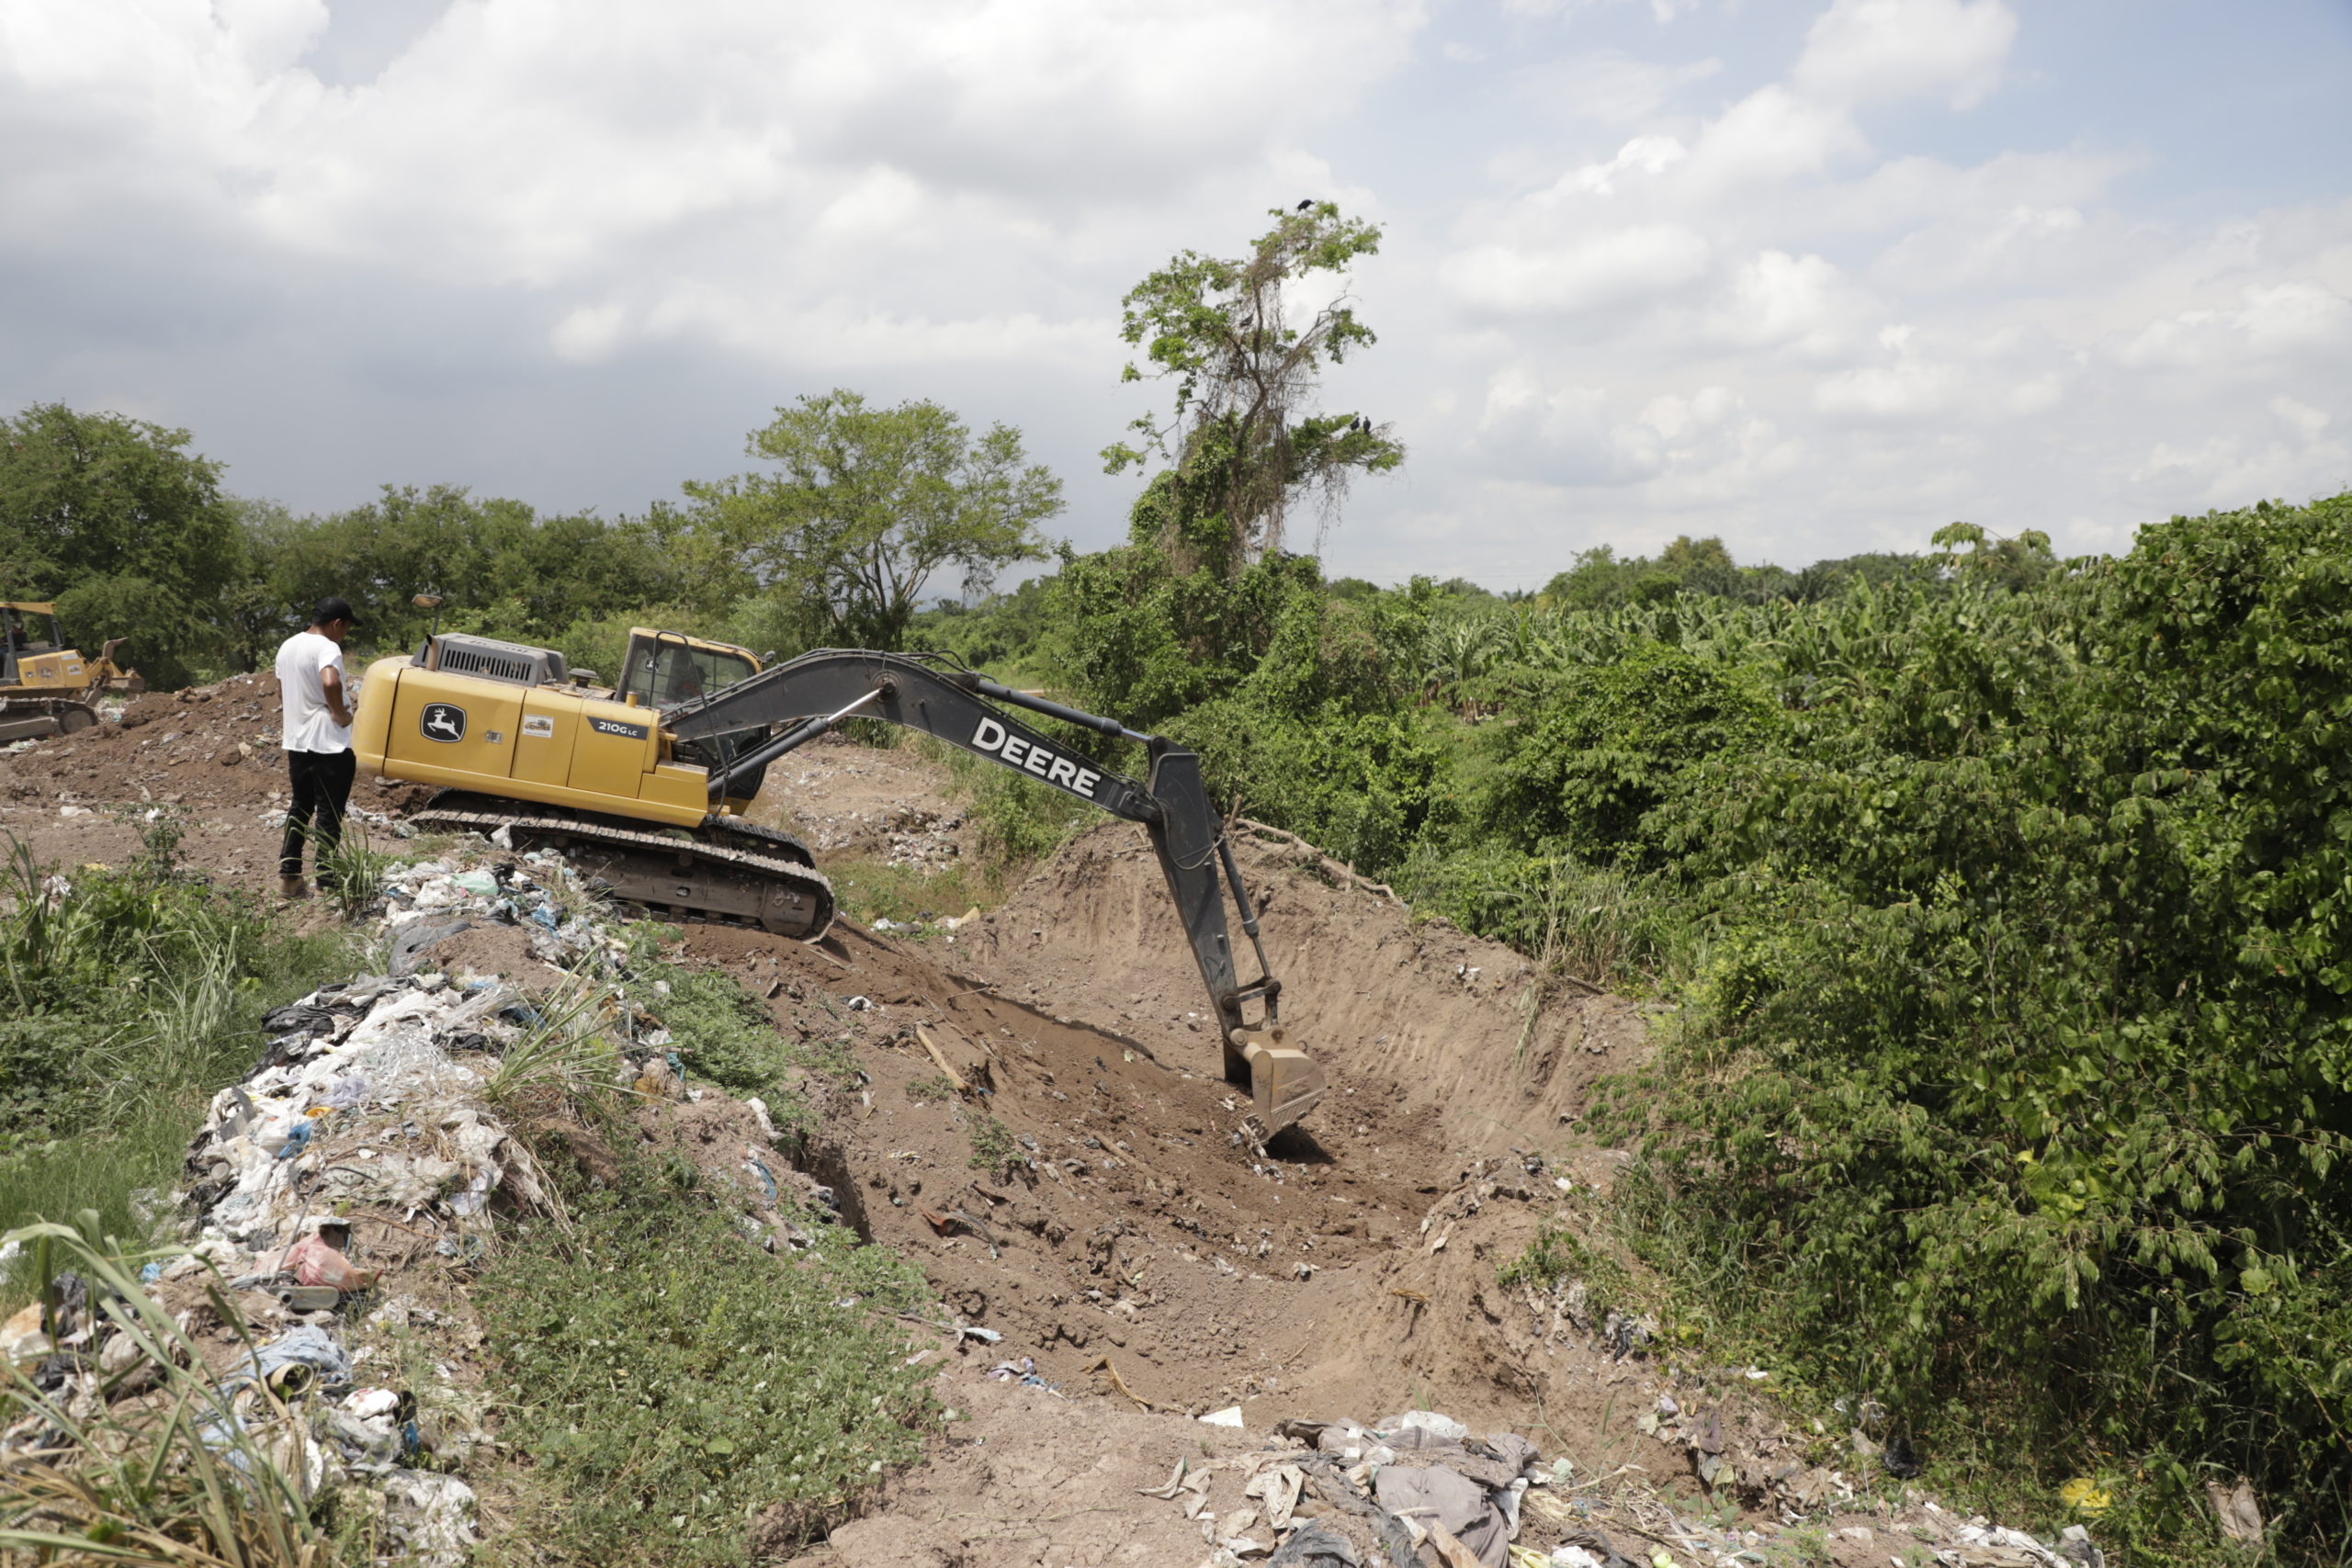 Una retroexcavadora prepara un canal para depositar la basura que llega del centro de Lima. Son pocos los lugares donde se puede escarbar, debido a que el agua está a pocos metros de la superficie de este terreno. Foto CC/Amílcar Izaguirre